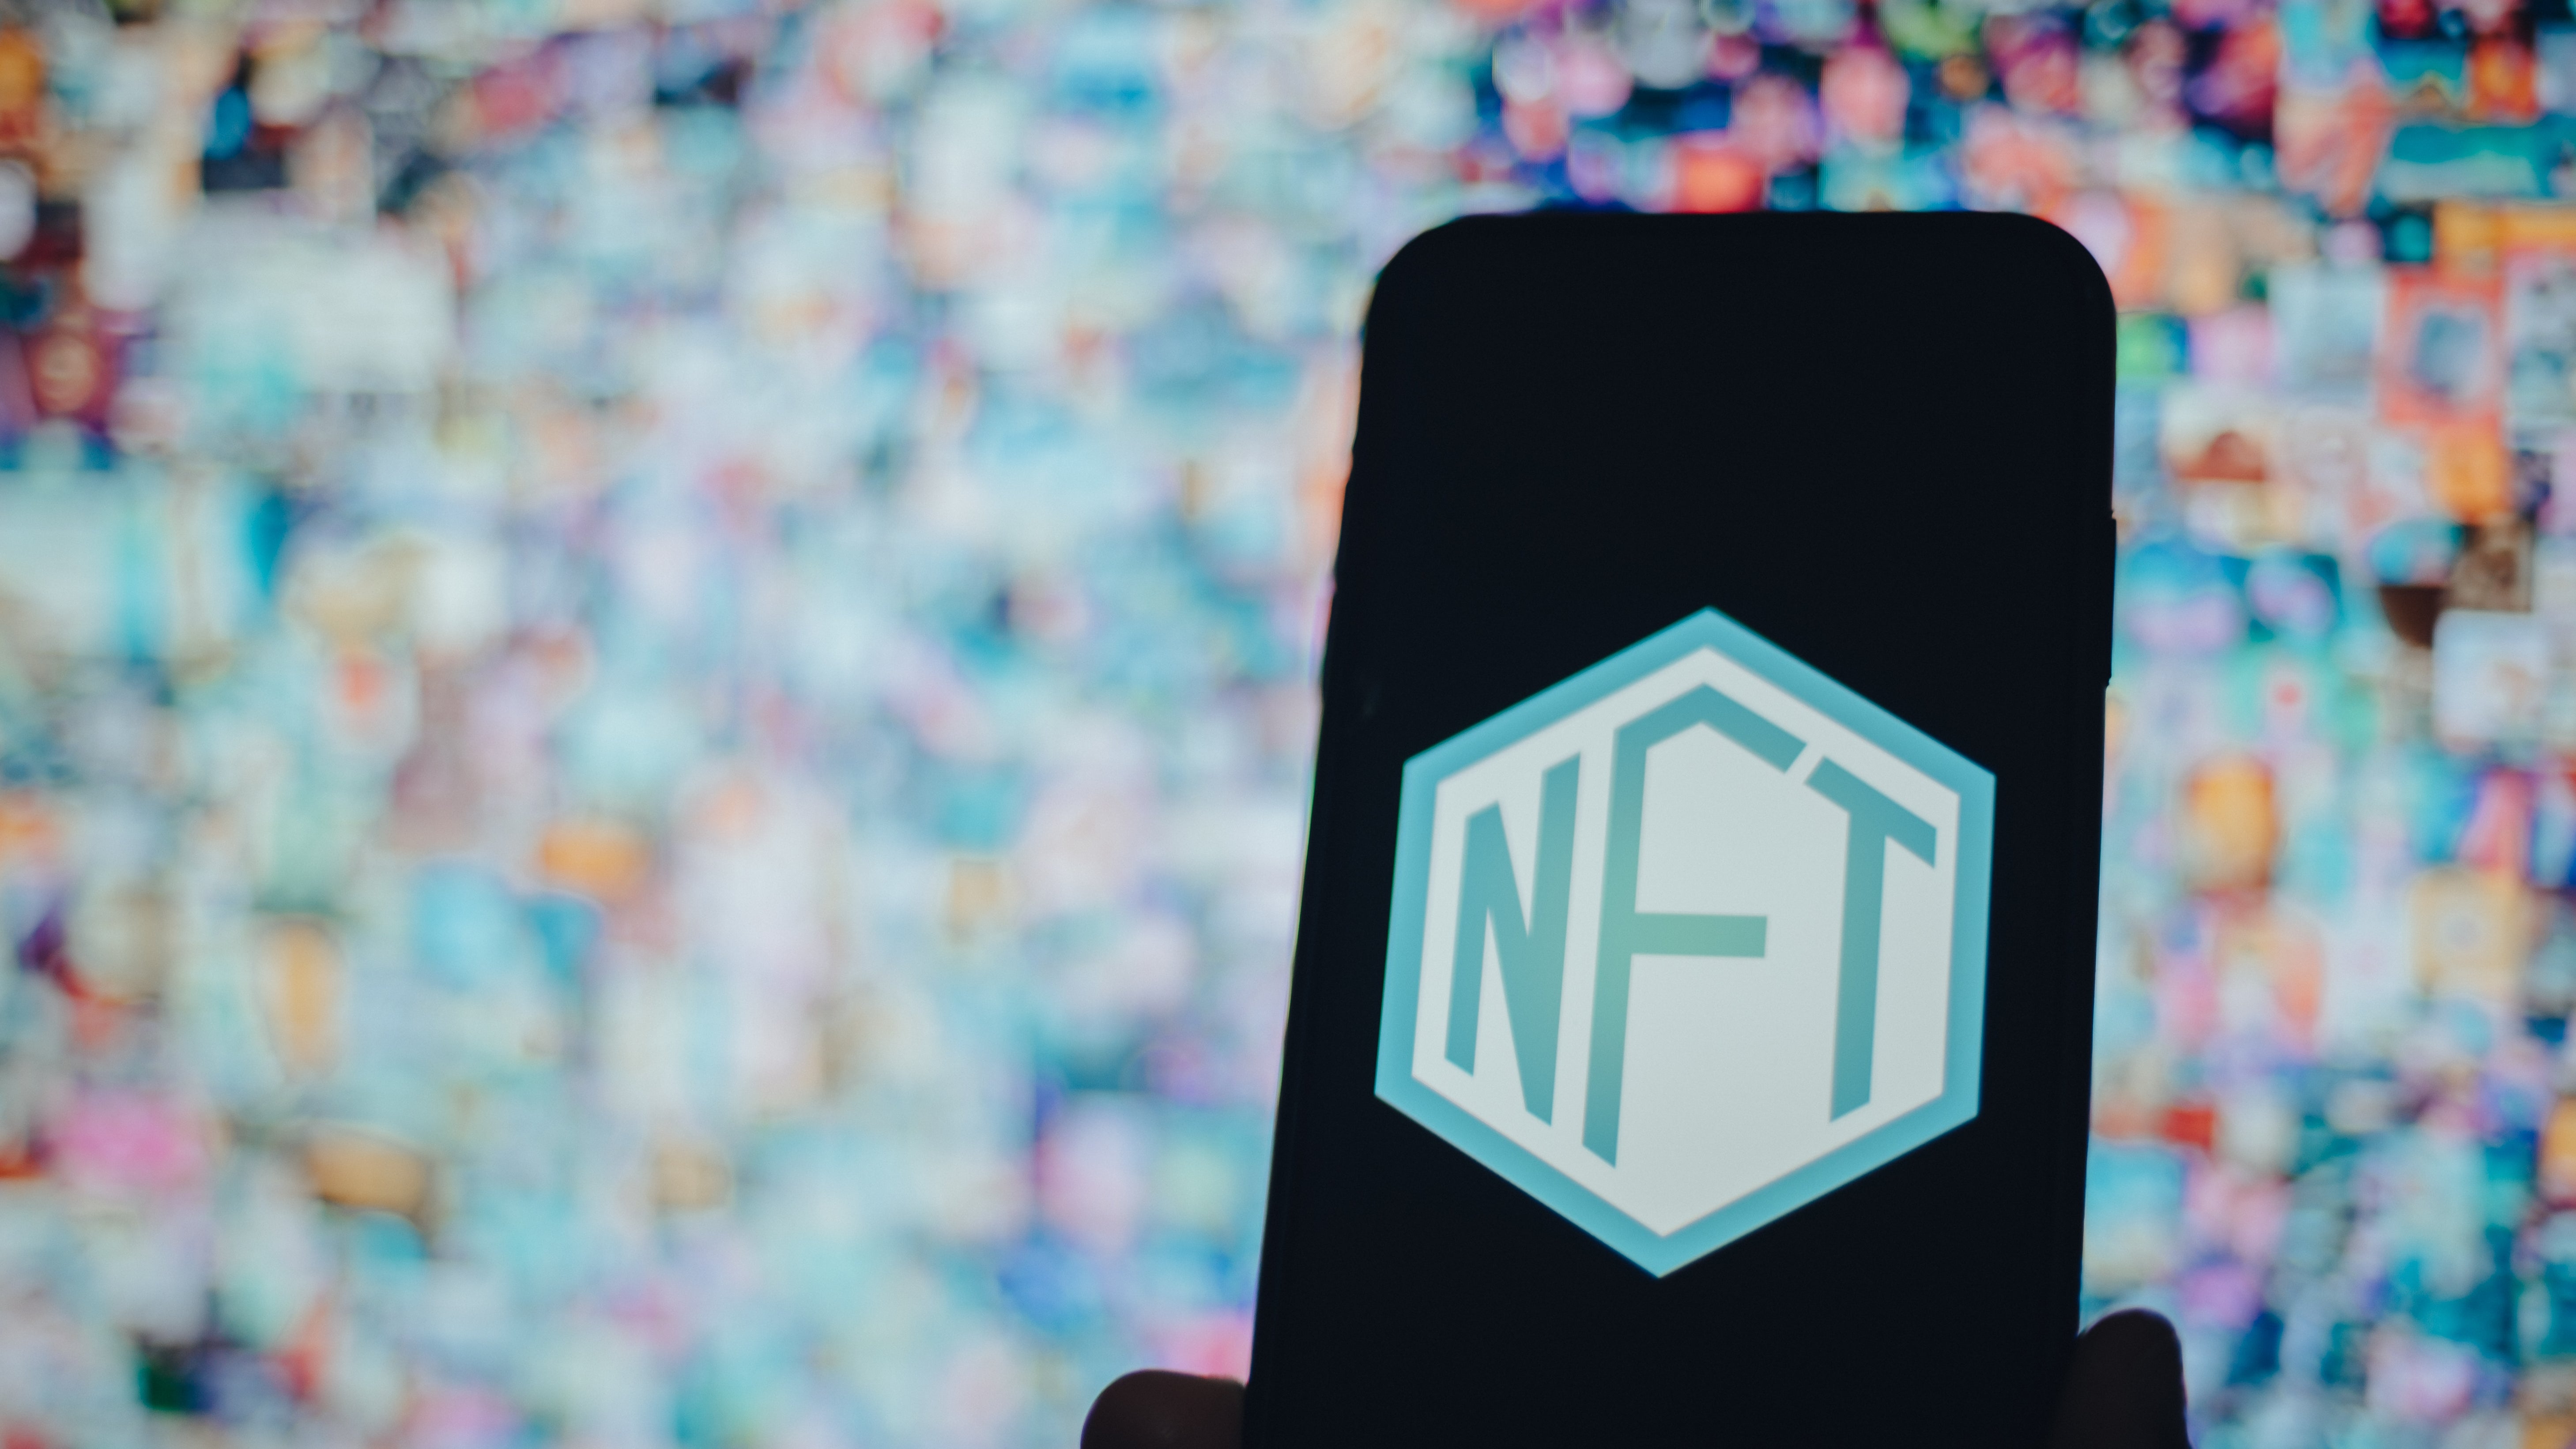 NFT: Non Fungible Token